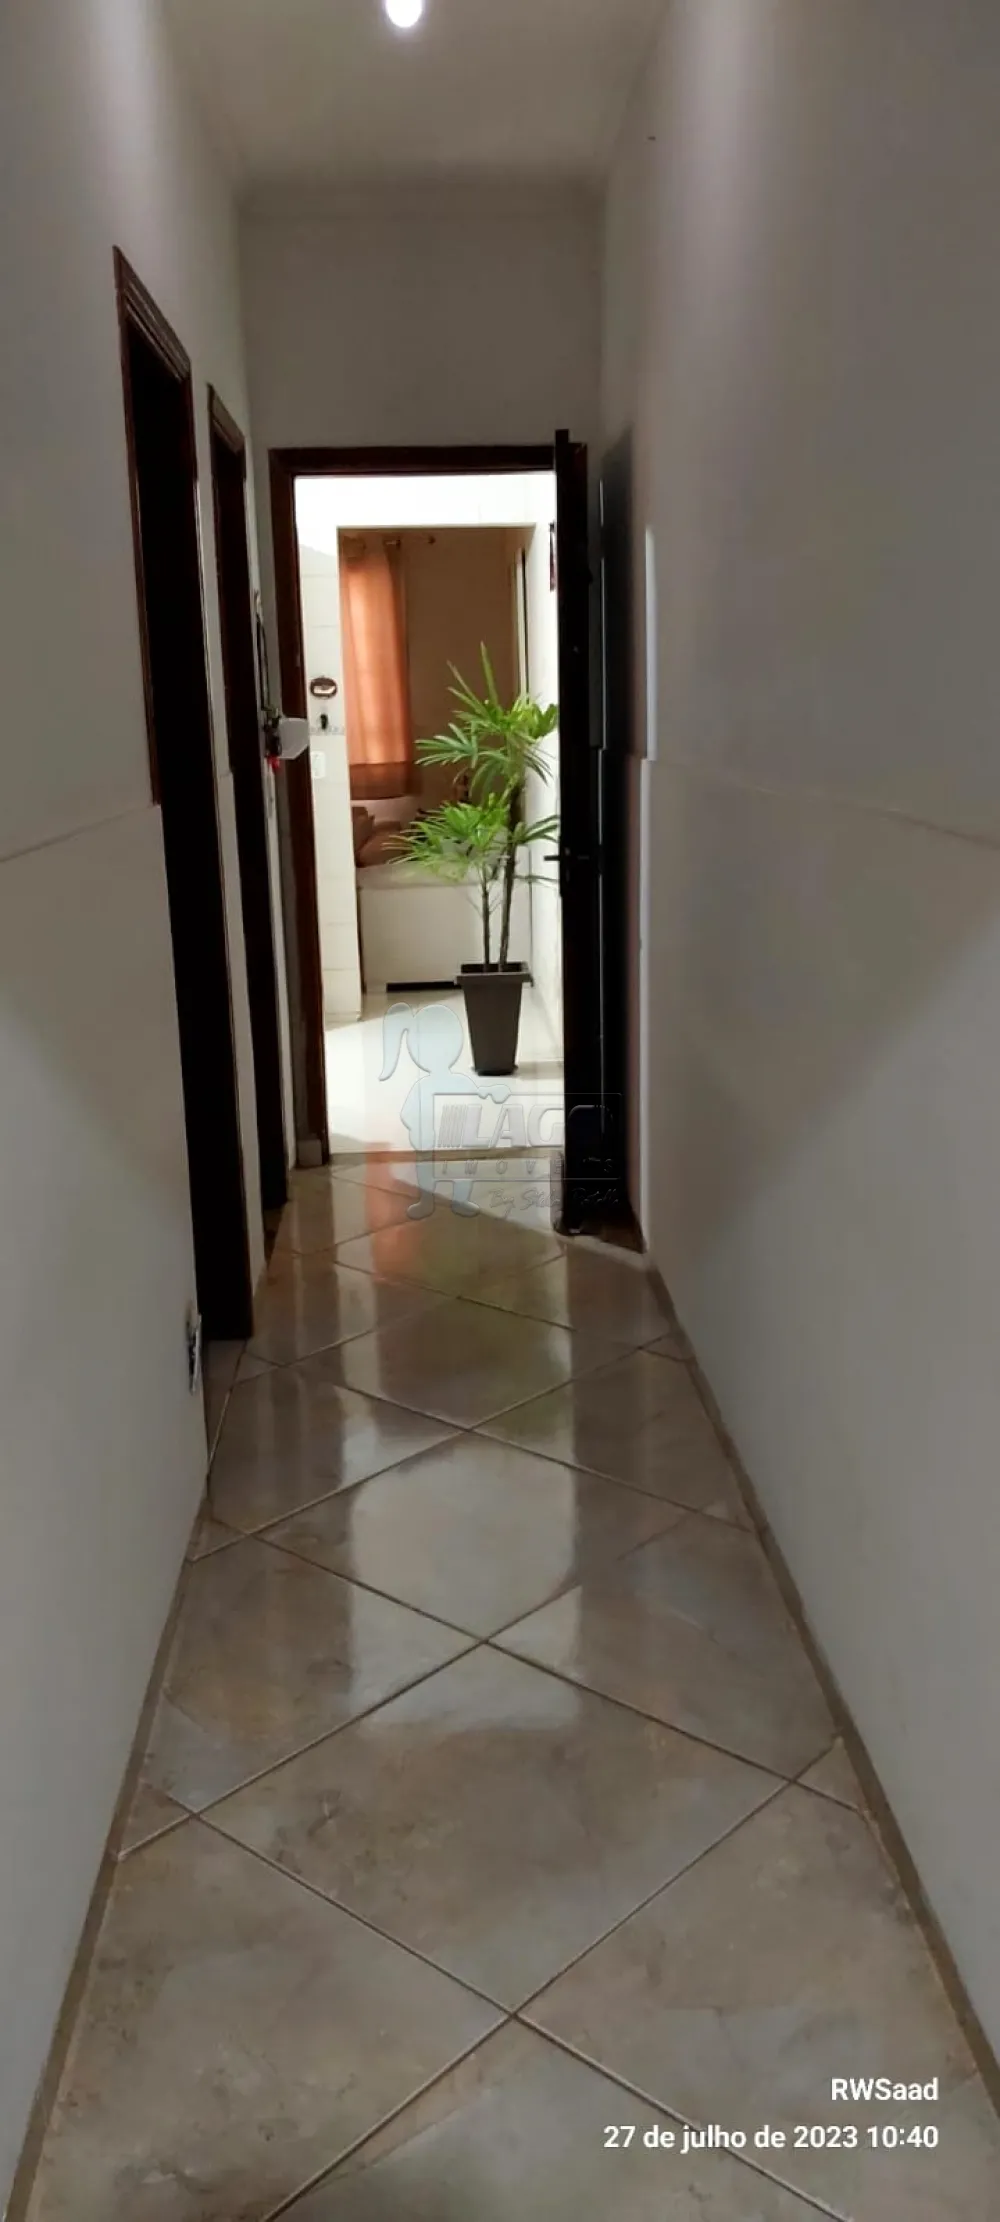 Comprar Casa condomínio / Padrão em Ribeirão Preto R$ 255.000,00 - Foto 4